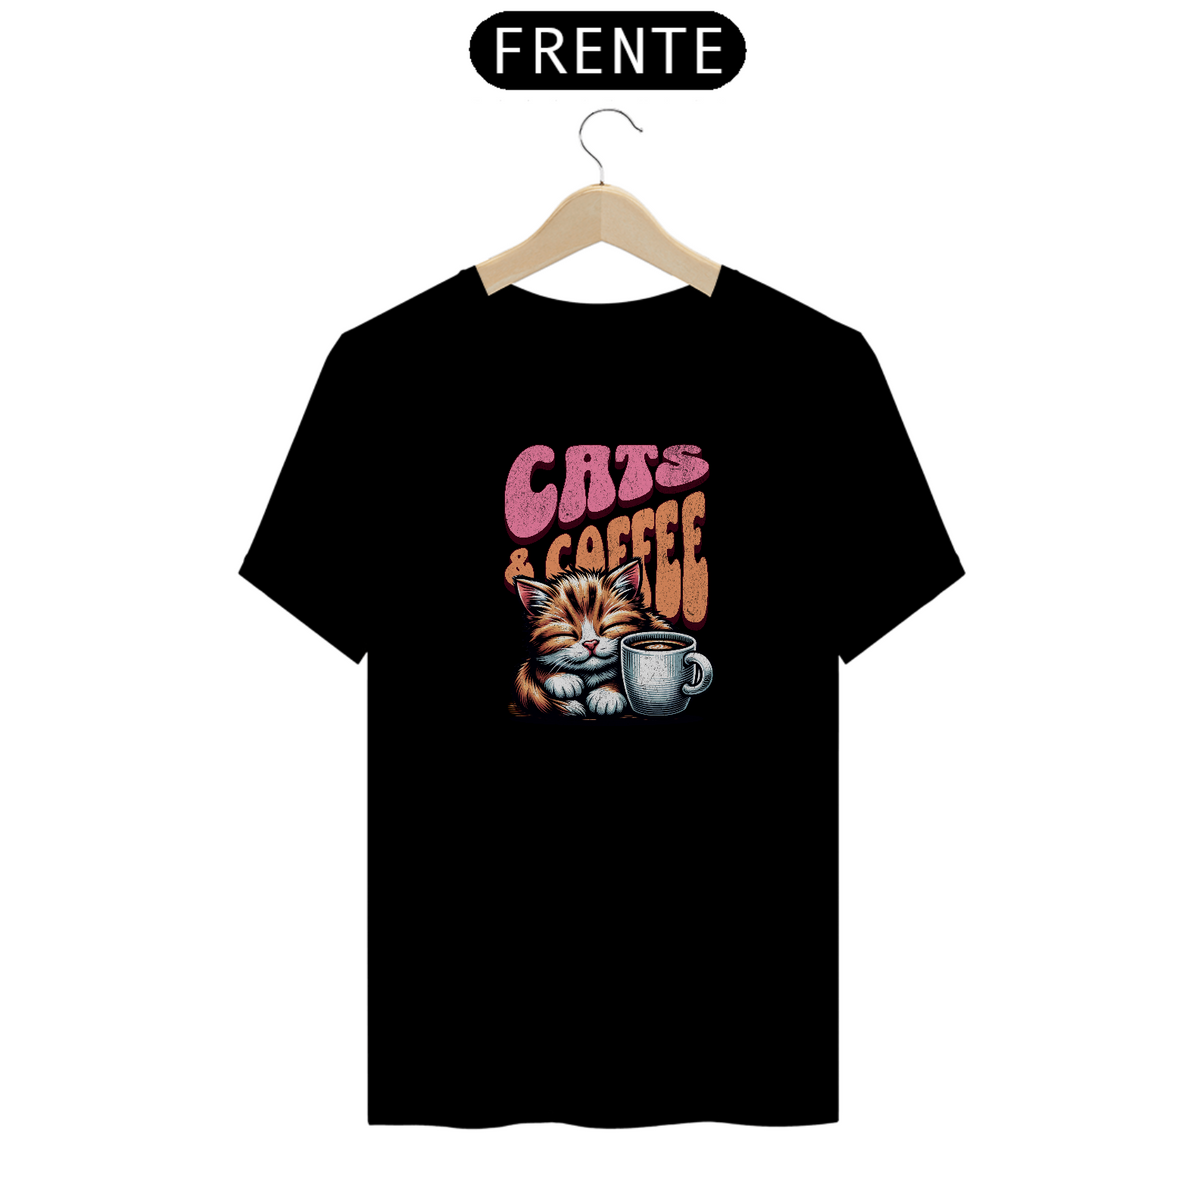 Nome do produto: Camiseta Cats and Coffee